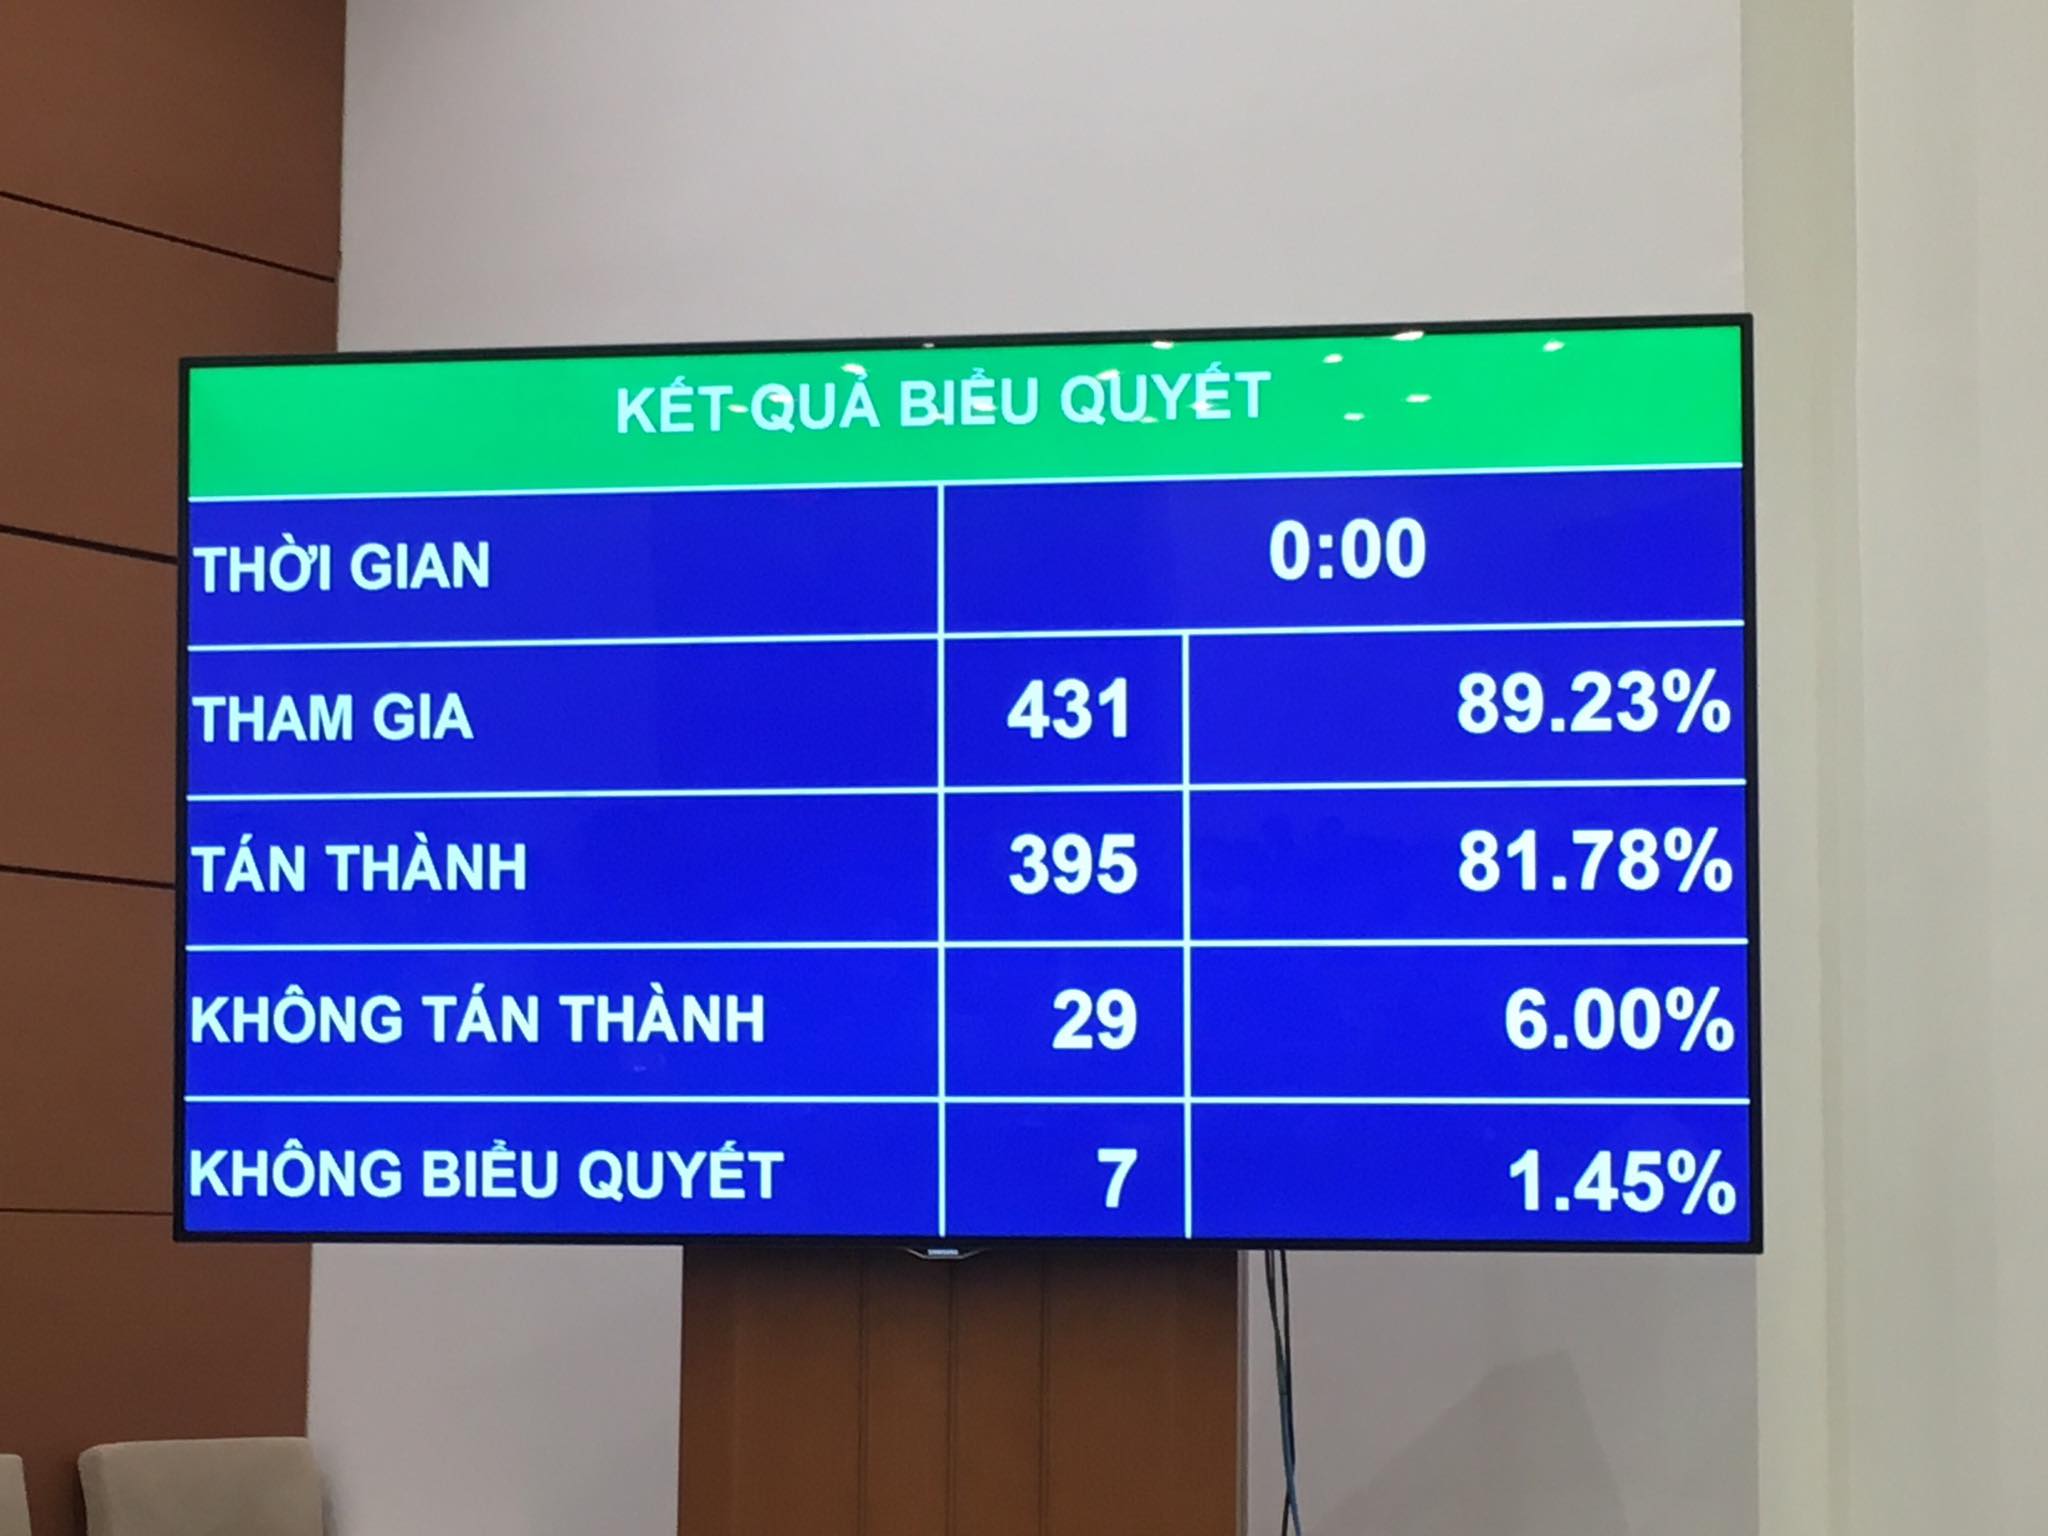 Kết quả biểu quyết dự thảo Nghị quyết phê chuẩn miễn nhiệm Bộ trưởng Y tế đối với bà Nguyễn Thị Kim Tiến